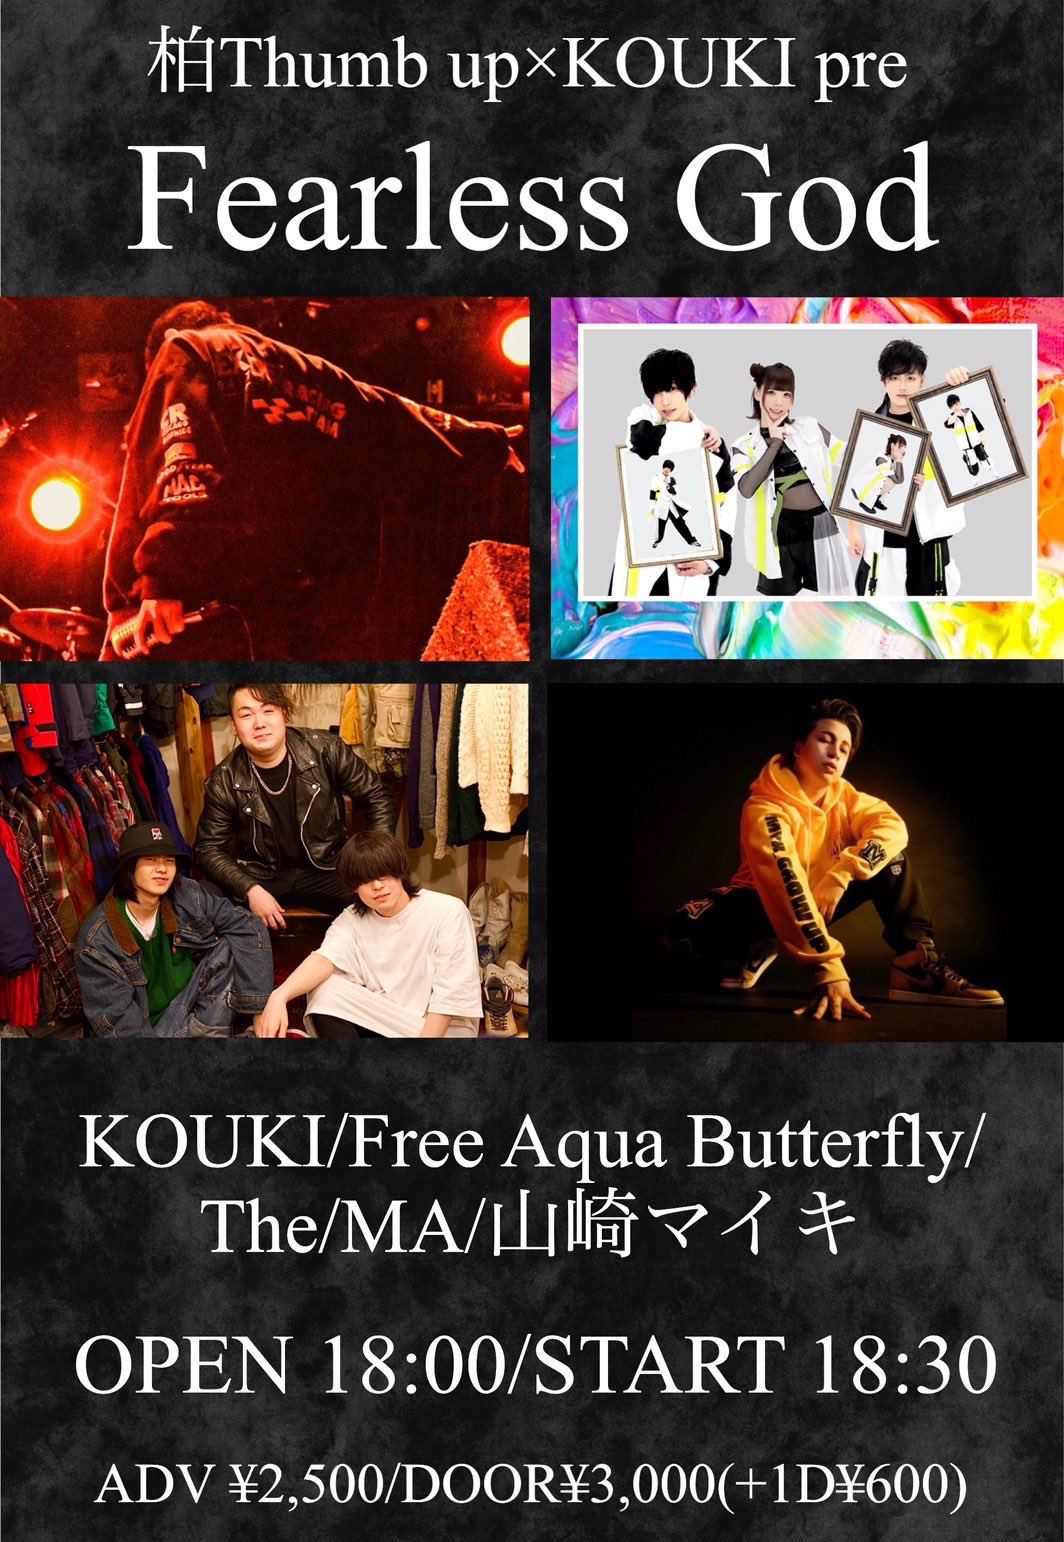 星井あおサポート出演公演(Free Aqua Butterfly)「柏Thumb up×KOUKI pre 『Fearless God』」